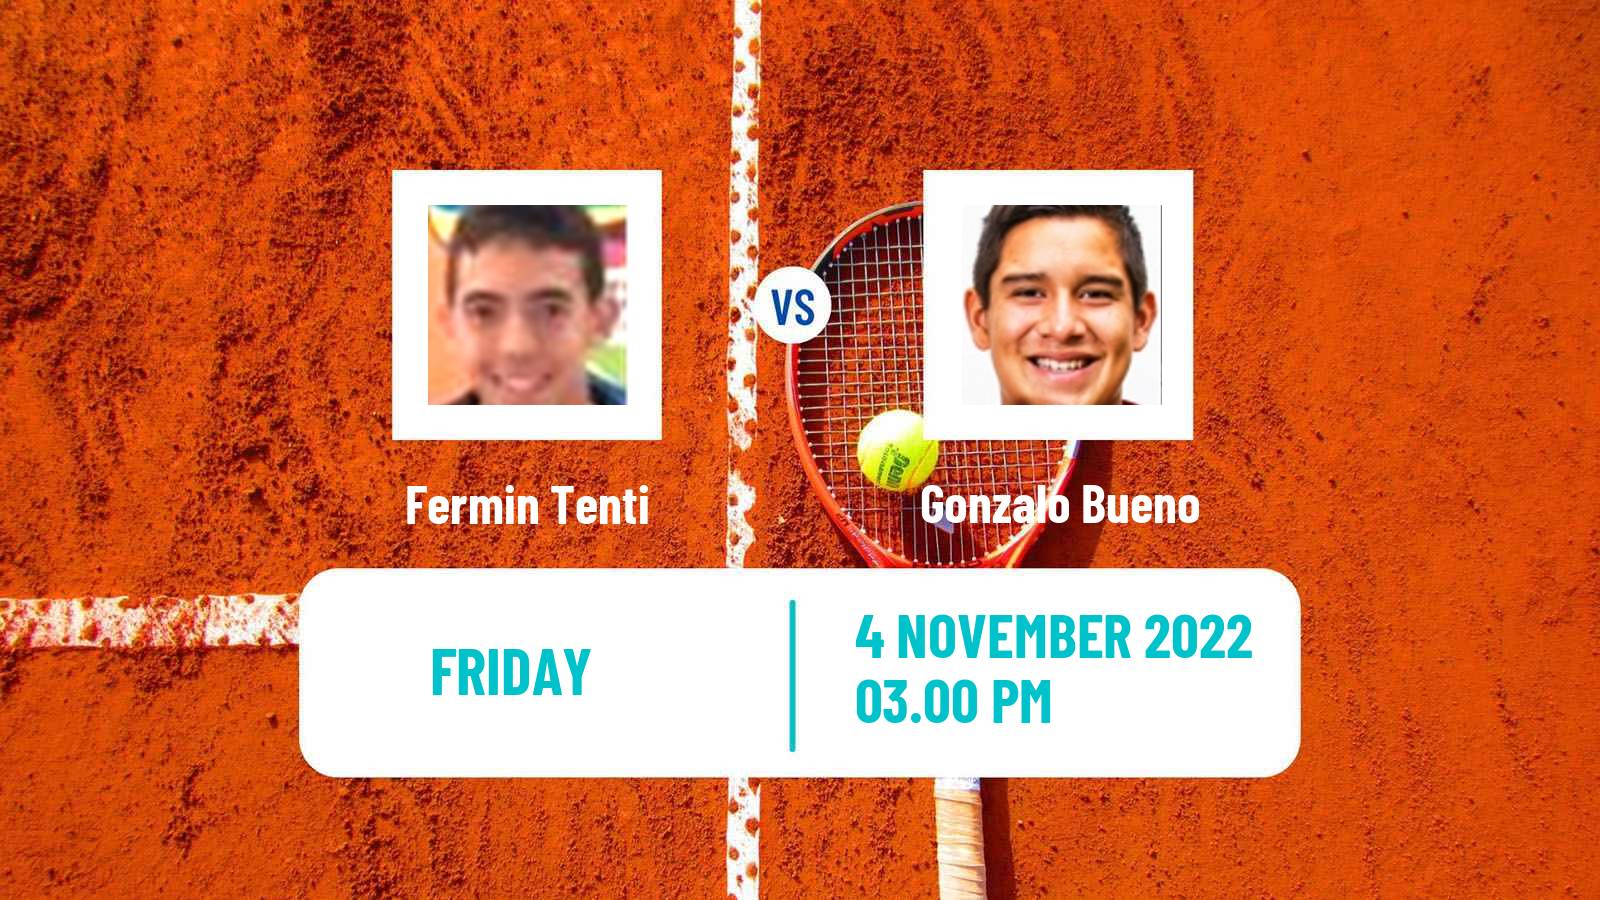 Tennis ITF Tournaments Fermin Tenti - Gonzalo Bueno